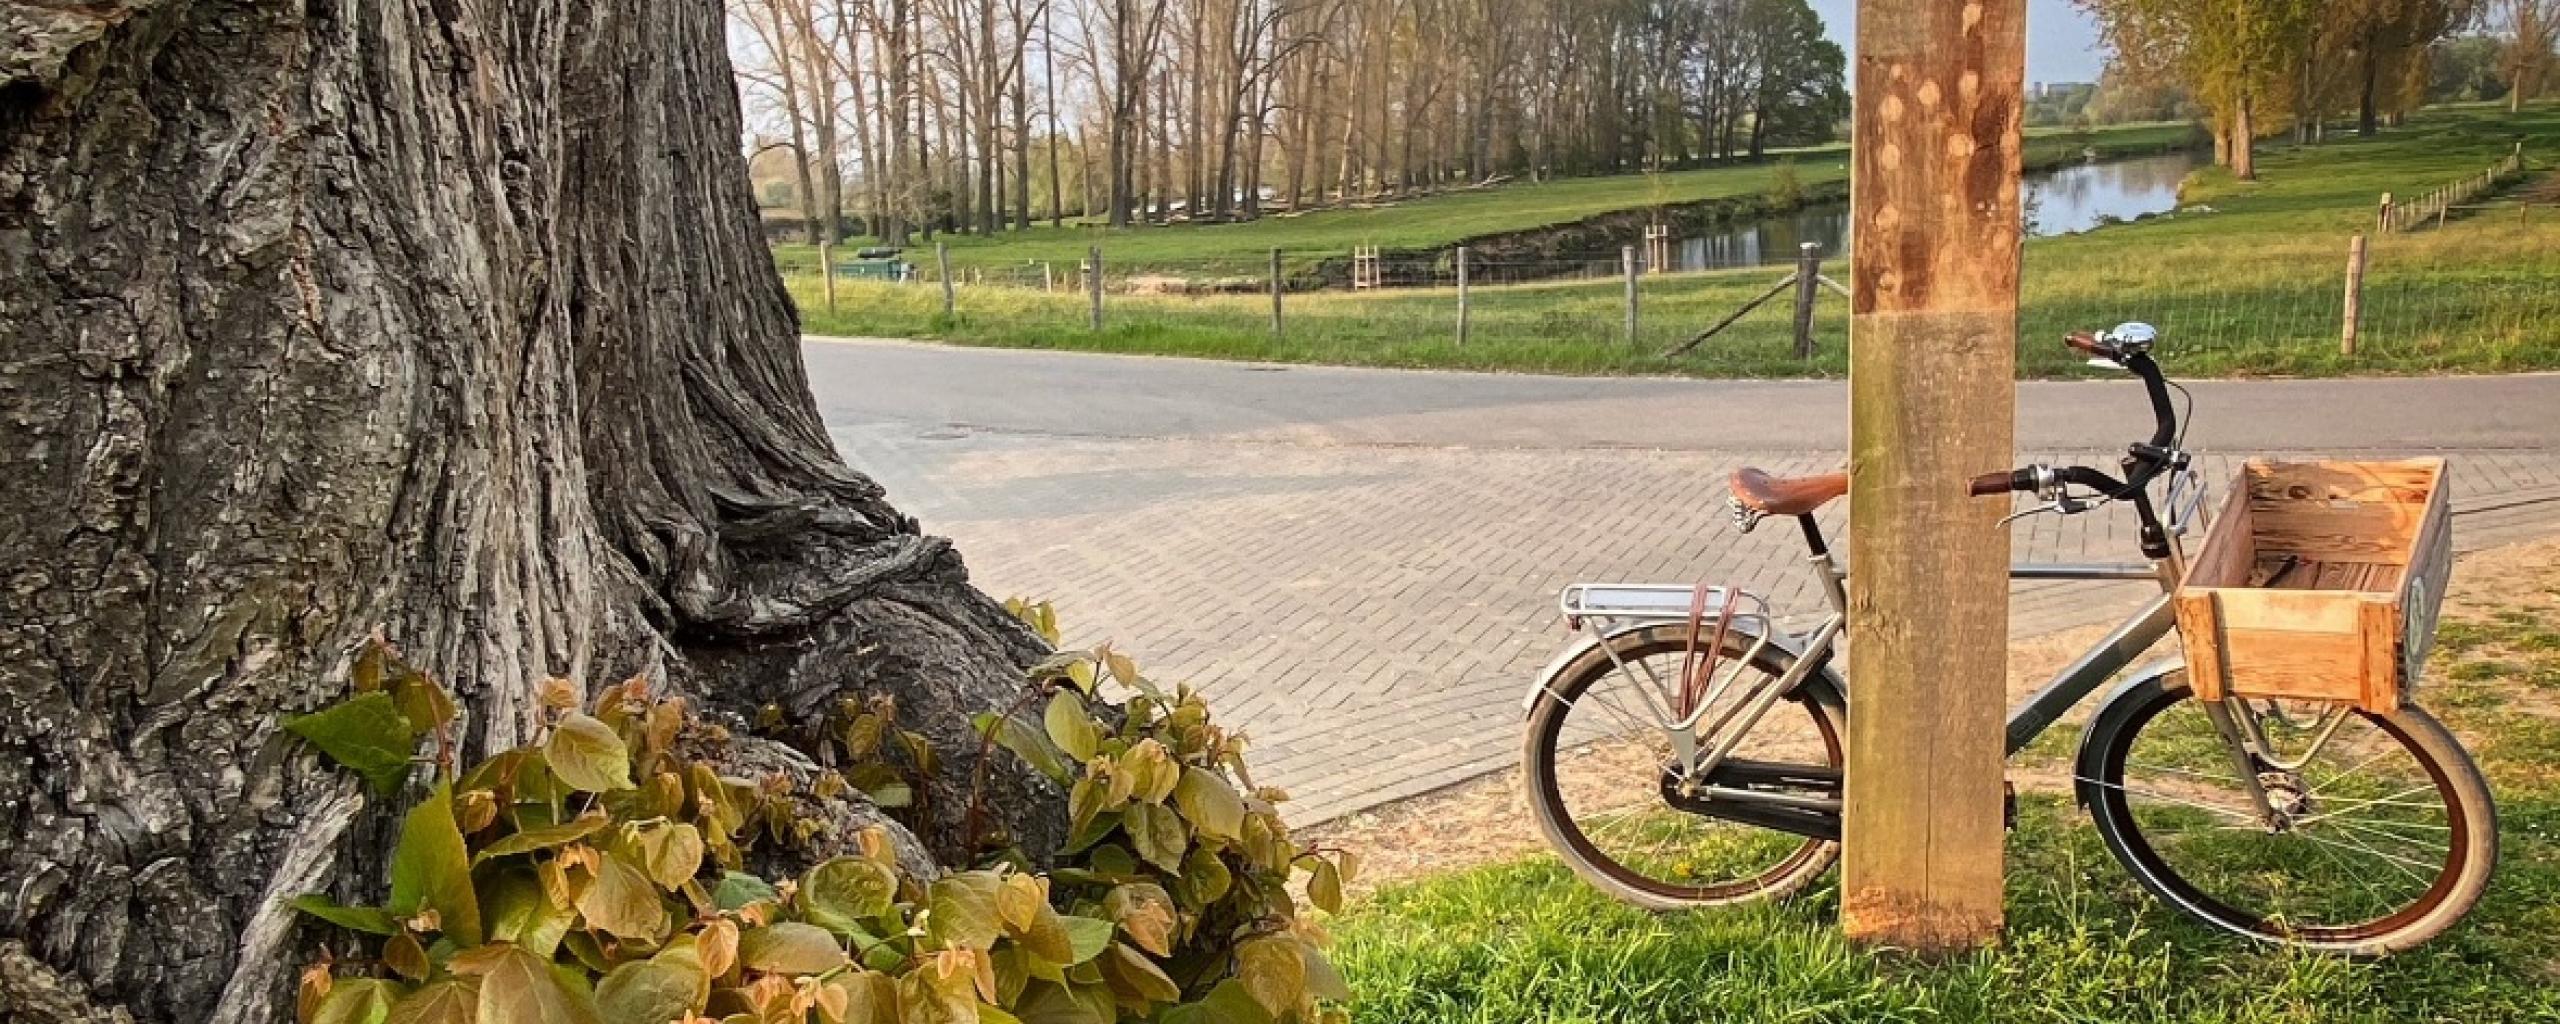 Een fiets staat tegen een stevige paal naast een grote boom.